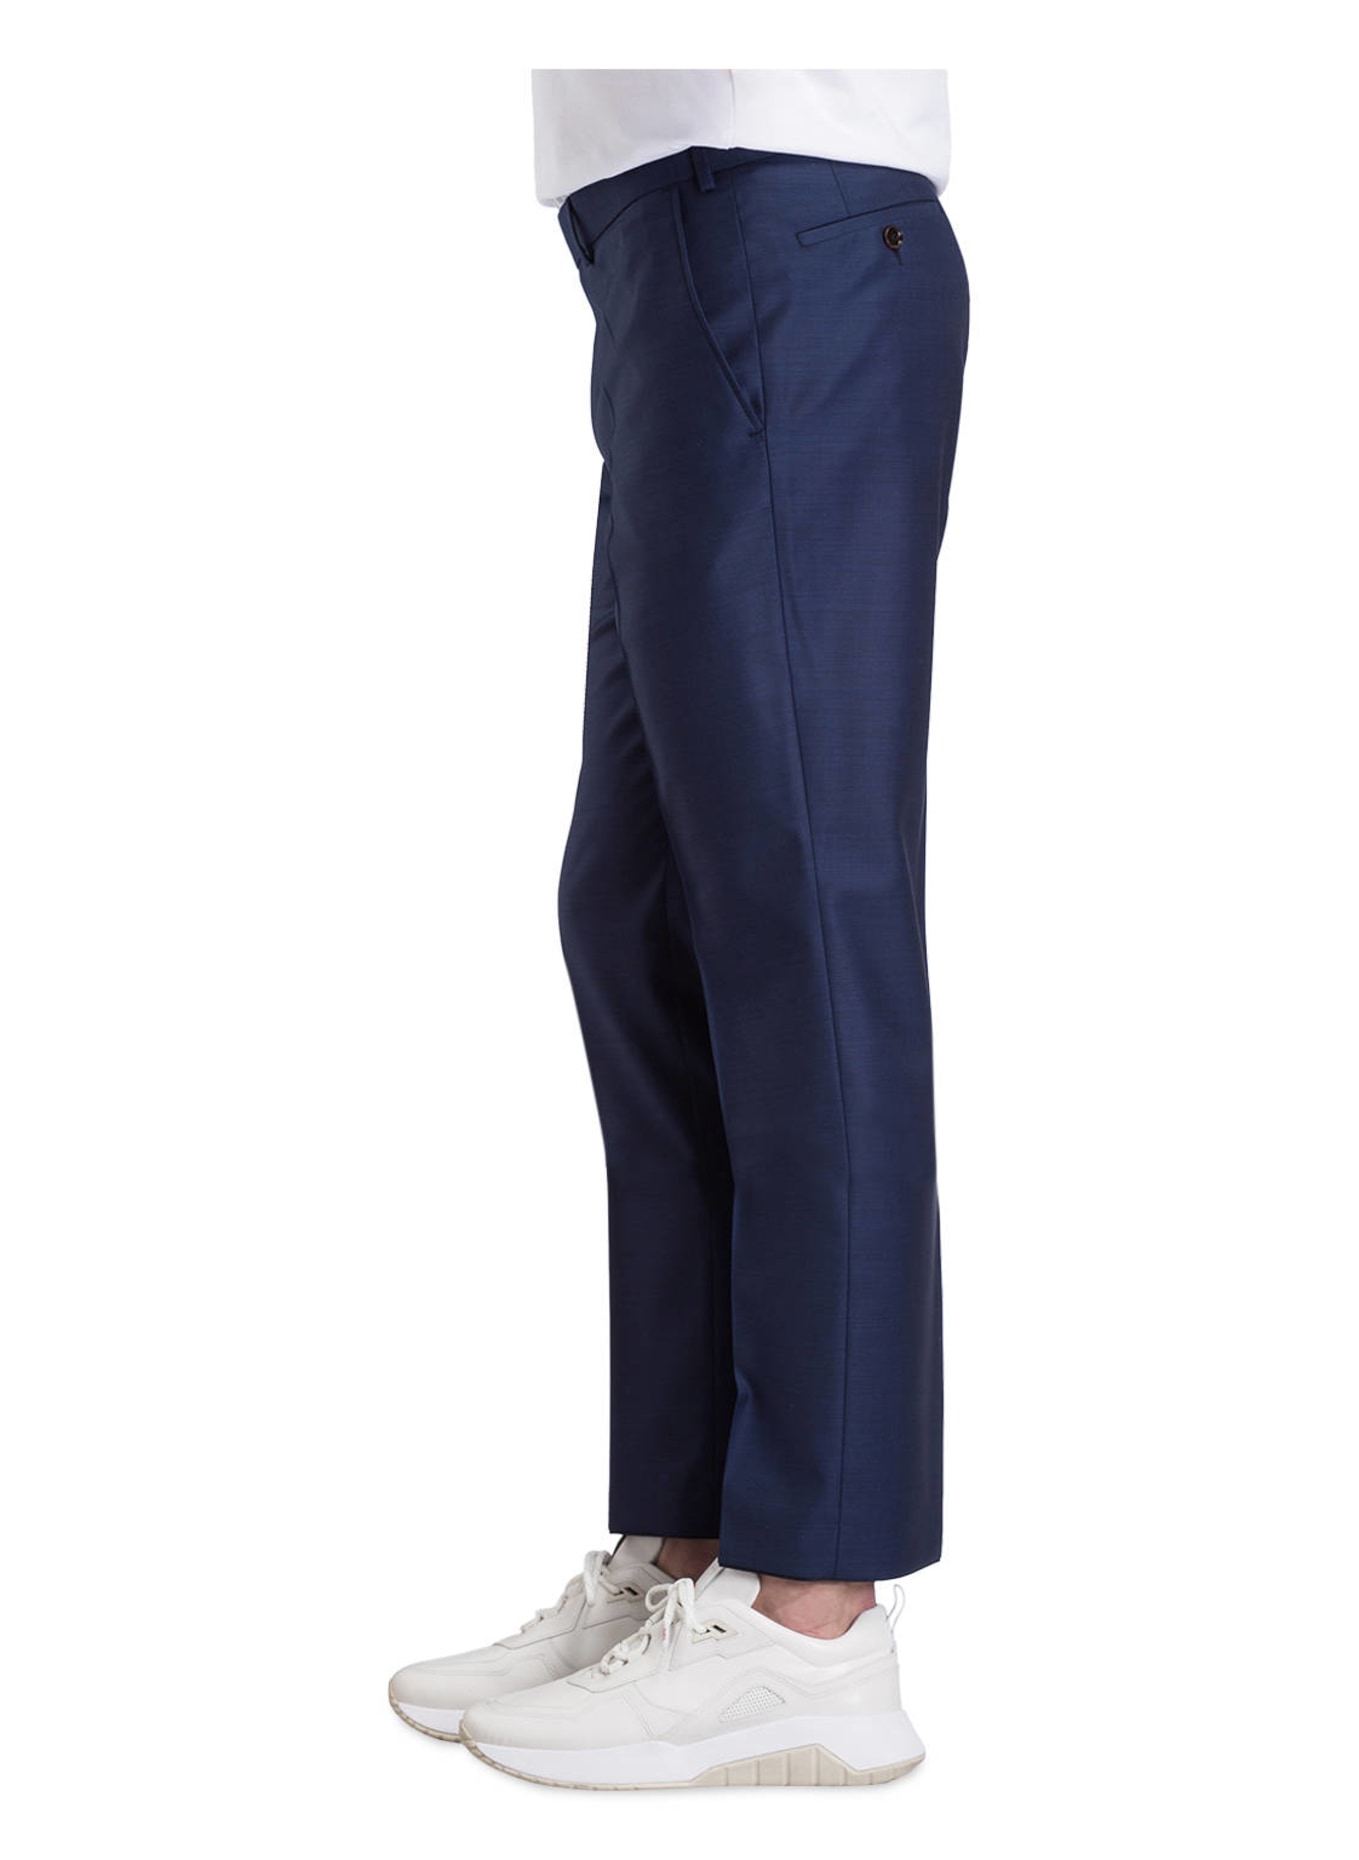 EDUARD DRESSLER Suit trousers shaped fit , Color: 045 DUNKELBLAU (Image 5)